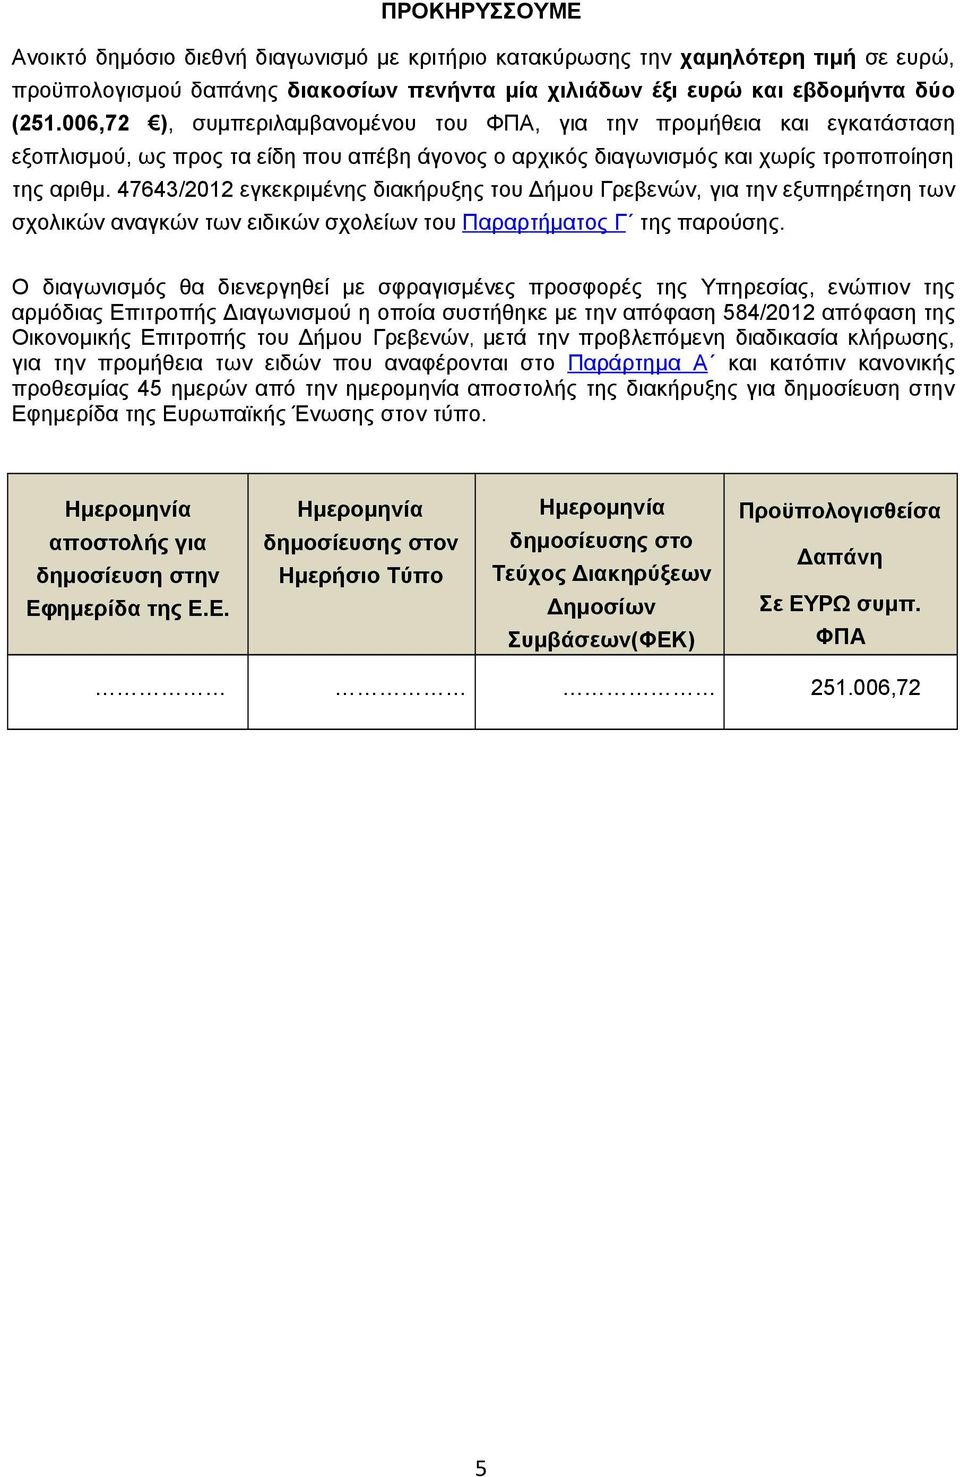 47643/2012 εγκεκριμένης διακήρυξης του Δήμου Γρεβενών, για την εξυπηρέτηση των σχολικών αναγκών των ειδικών σχολείων του Πα ρα ρτήματος Γ της παρούσης.